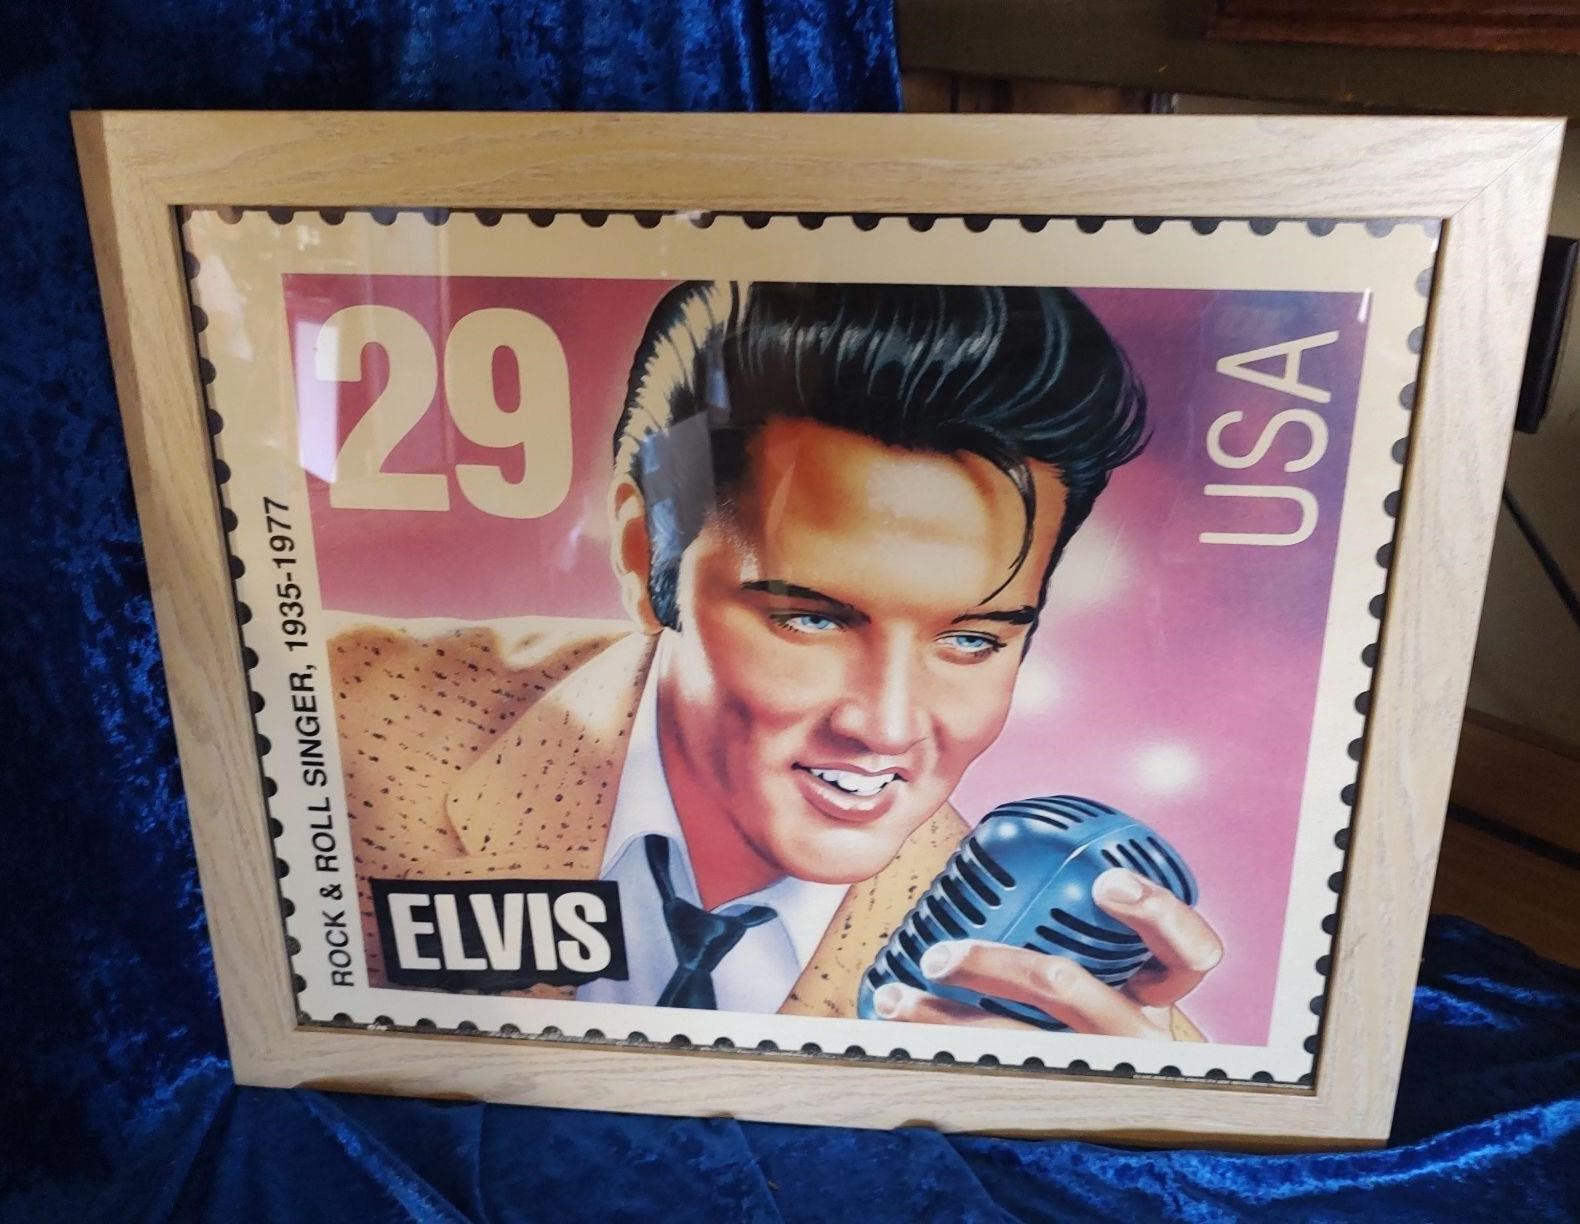 ELVIS PRESLEY stamp framed art